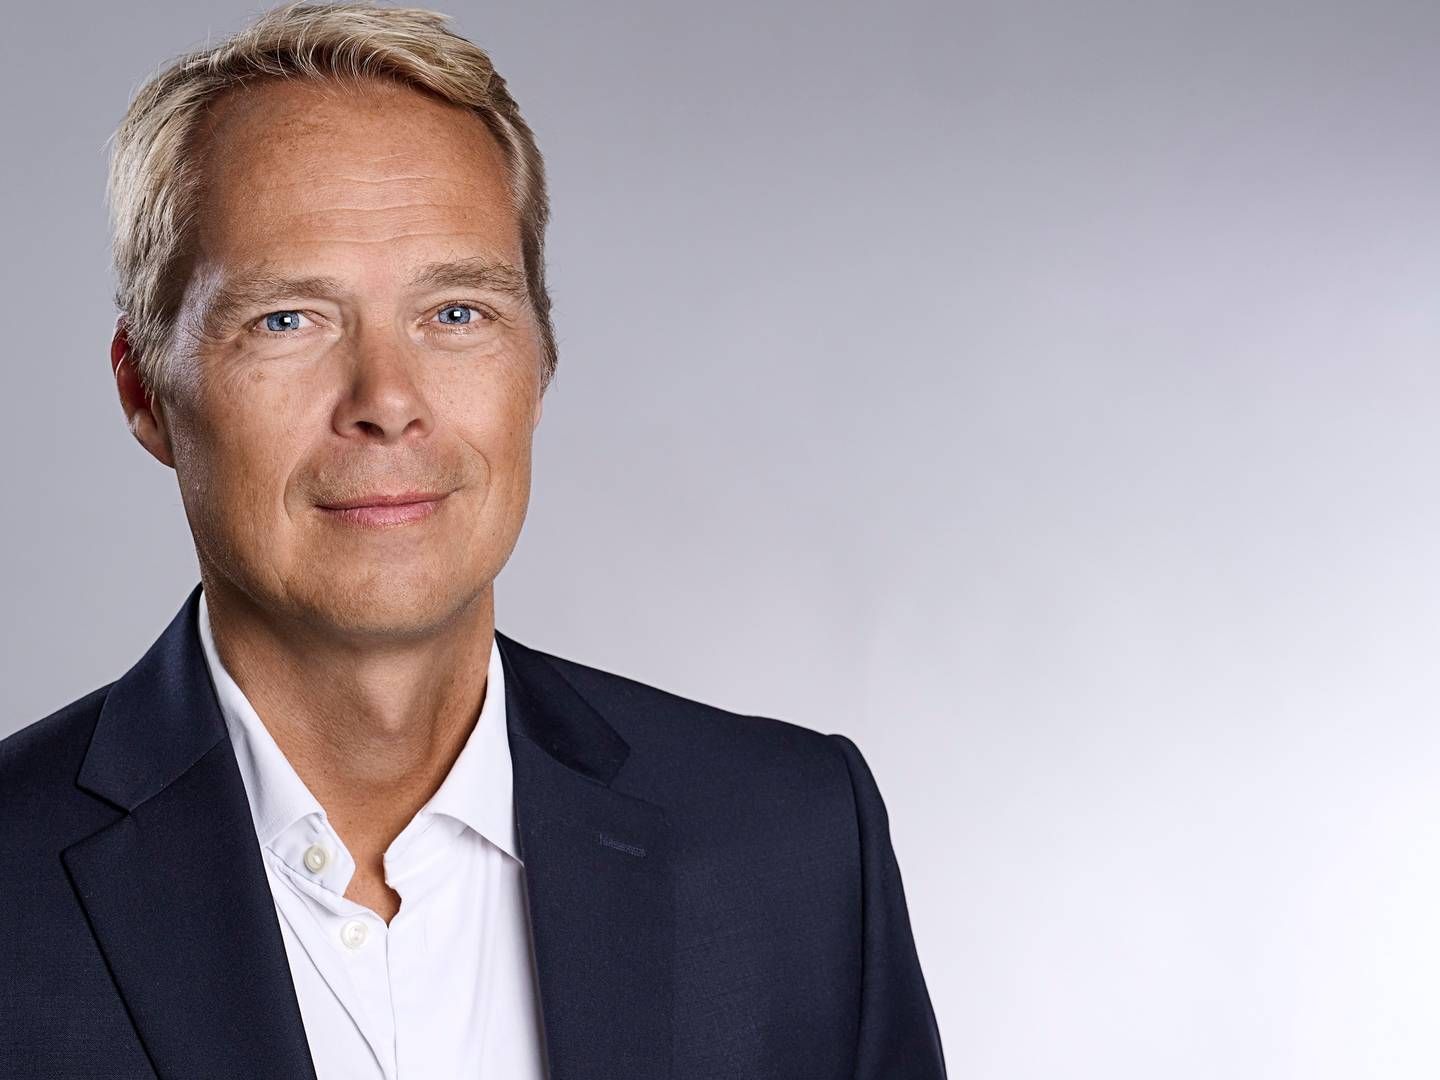 "De høje omkostninger og inflation har presset indtjeningen," konstaterer Nordsterns adm. direktør, Torben Modvig. | Foto: PR / Helle Moos